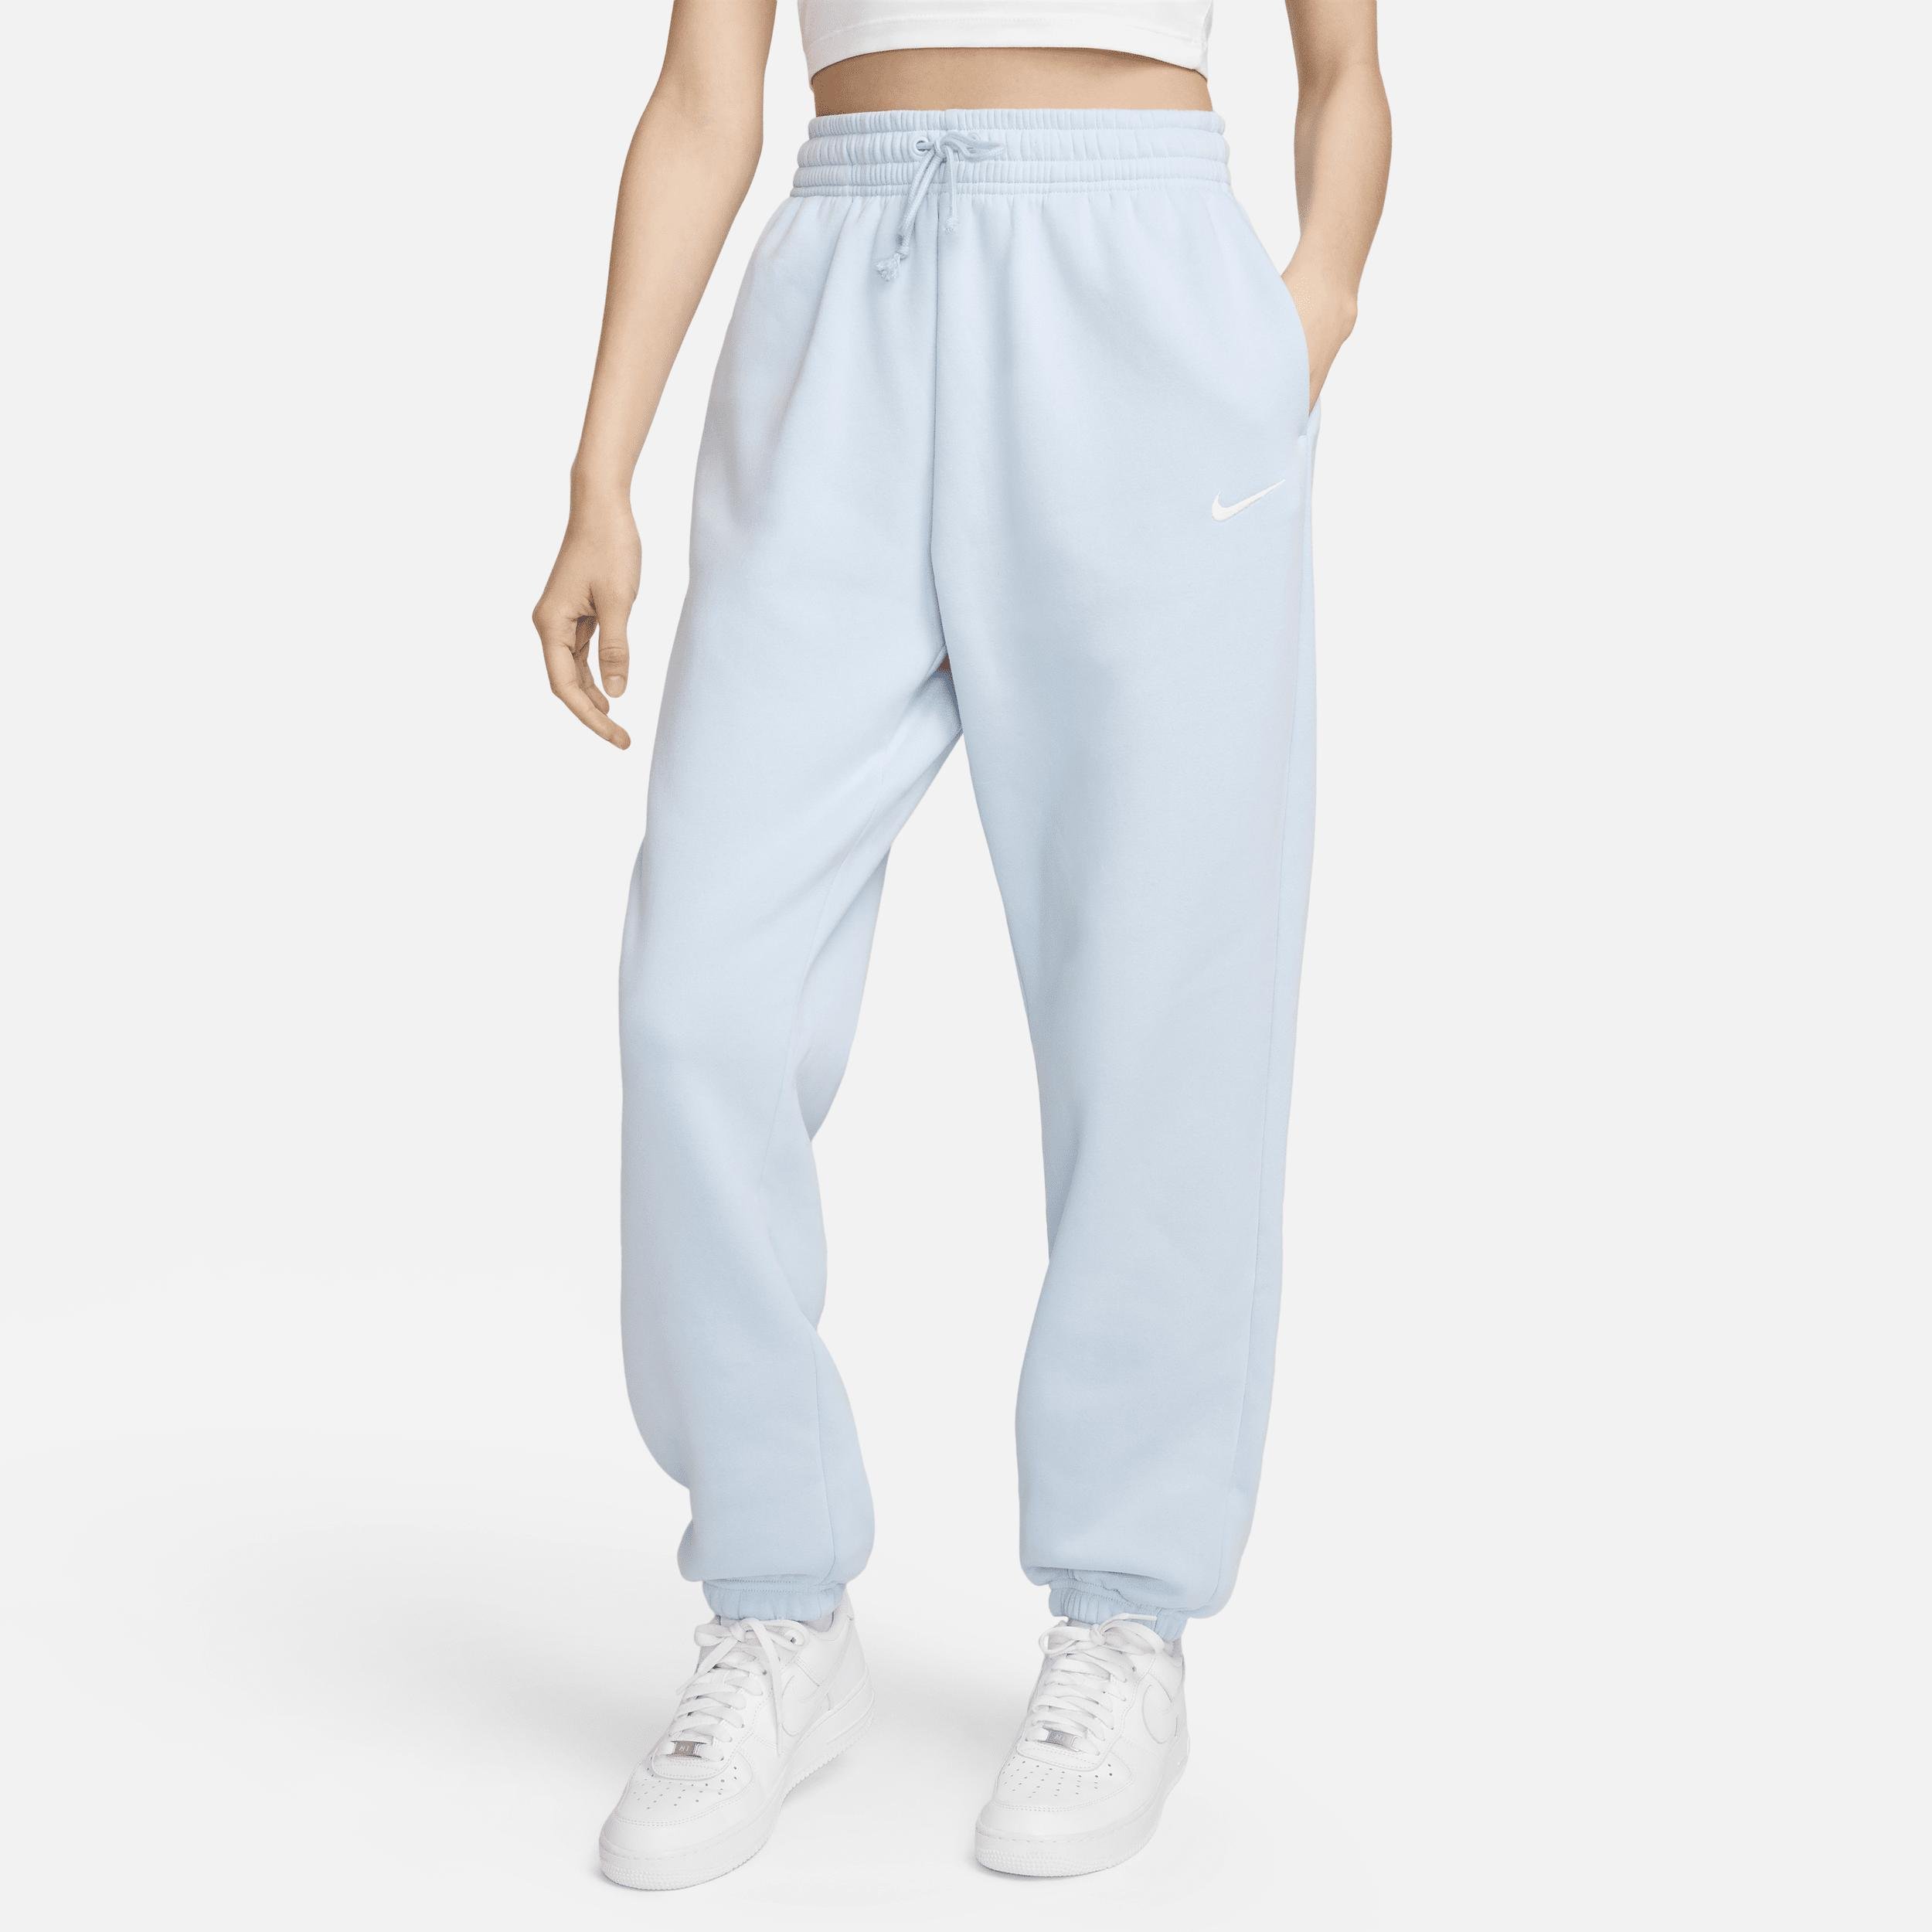 Women's Nike Sportswear Phoenix Fleece High-Waisted Oversized Sweatpants by NIKE